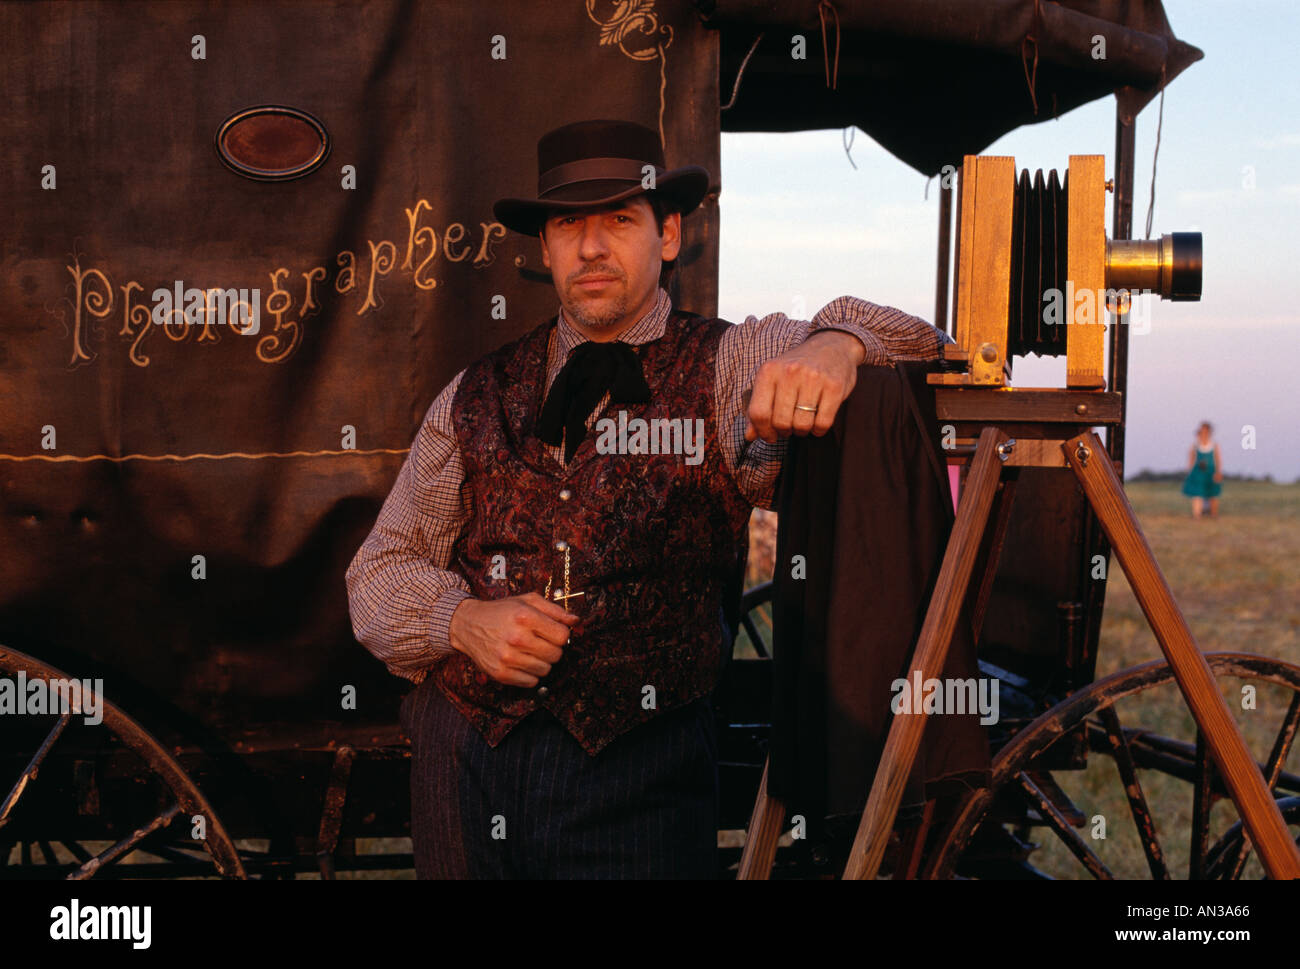 Zeitraum gekleidet Fotografen mit Bürgerkriegära fotografische equipmentPosing für eine portraitWith seine Antike 8x10 Kamera Stockfoto